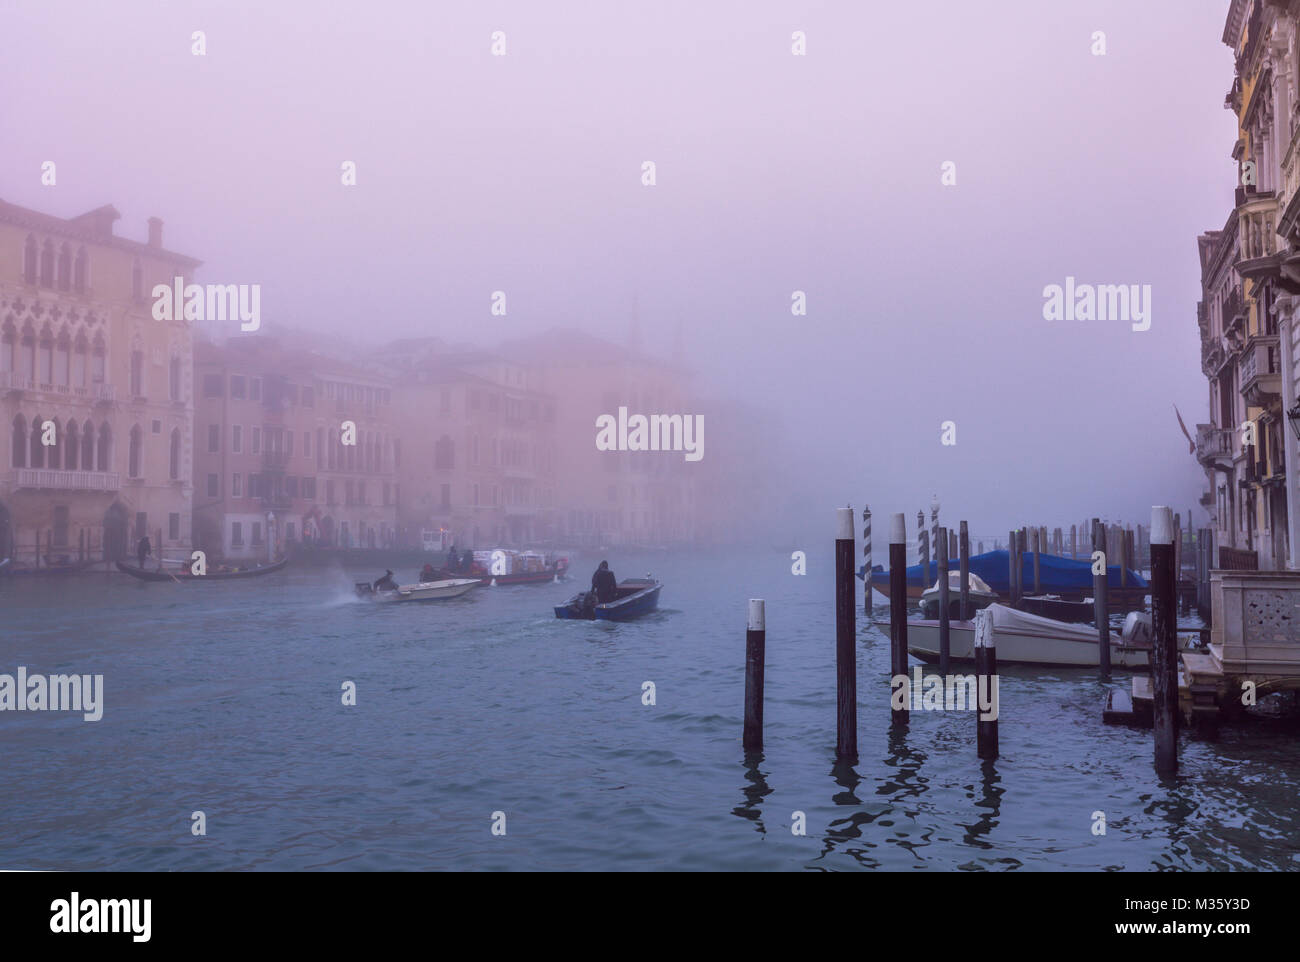 Venedig Canal Grande im Morgennebel und das tägliche Treiben der Einheimischen Italien Reisen Europa Welt Erbe Stockfoto